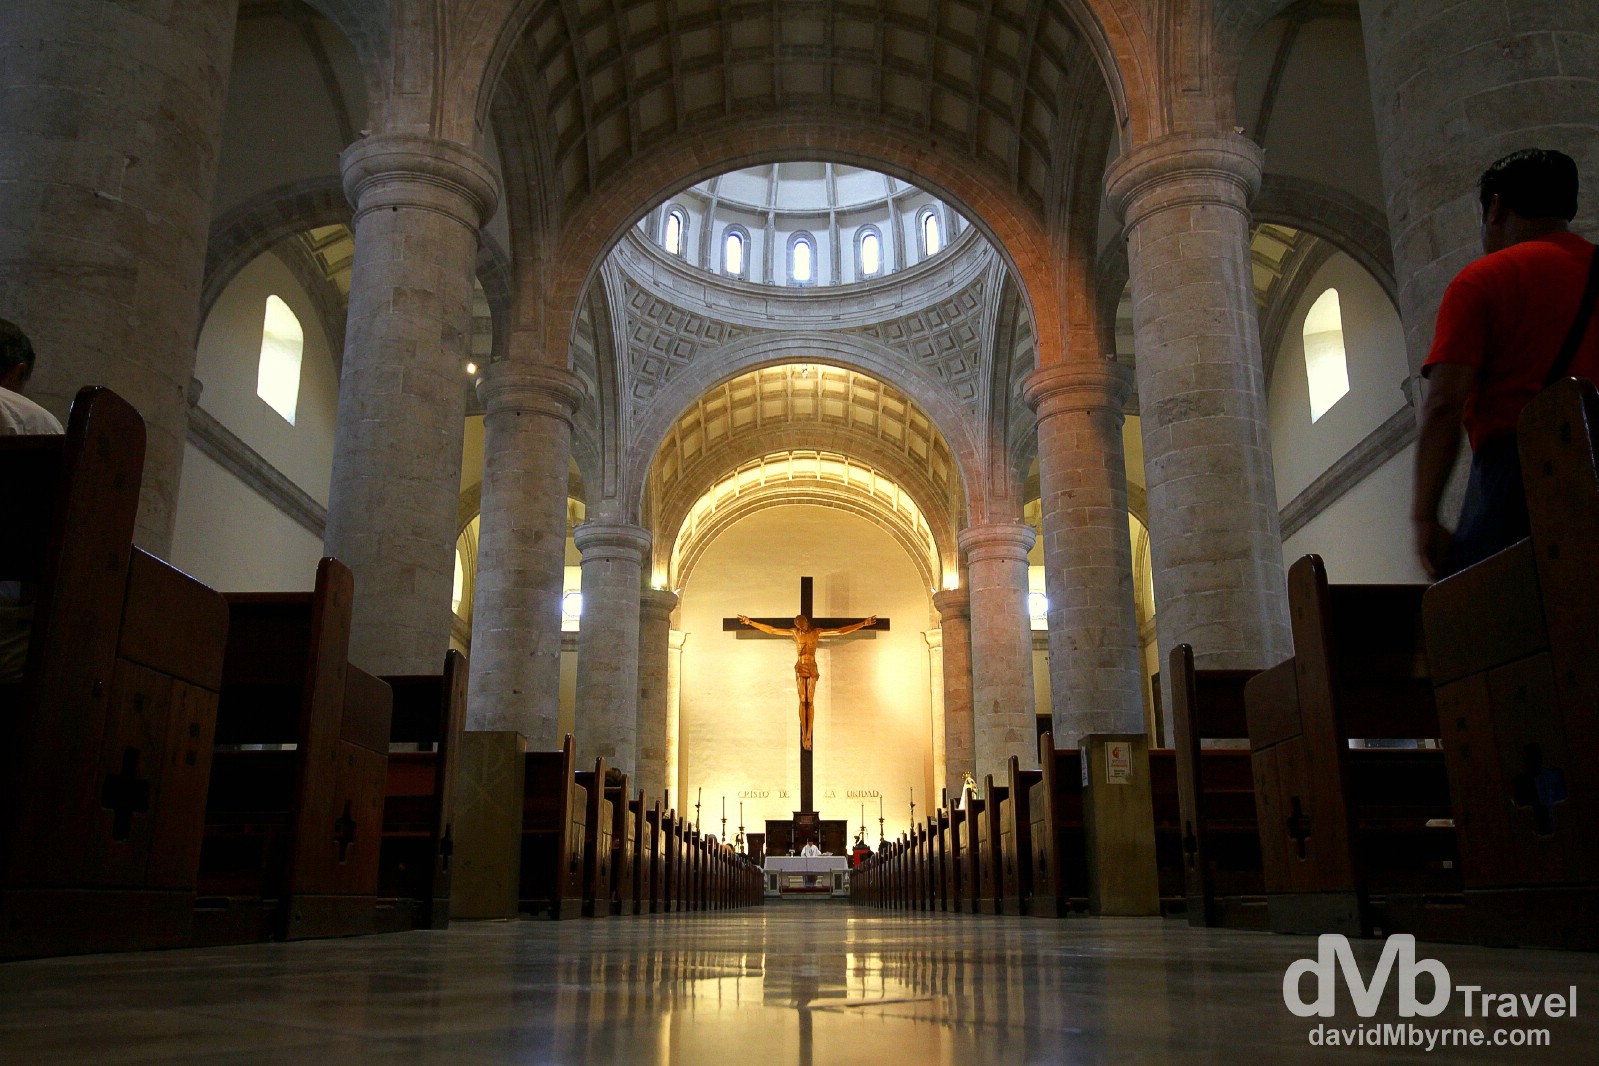 The interior of Catedral de San Ildefonso, Merida, Yucatan, Mexico. April 30th 2013.